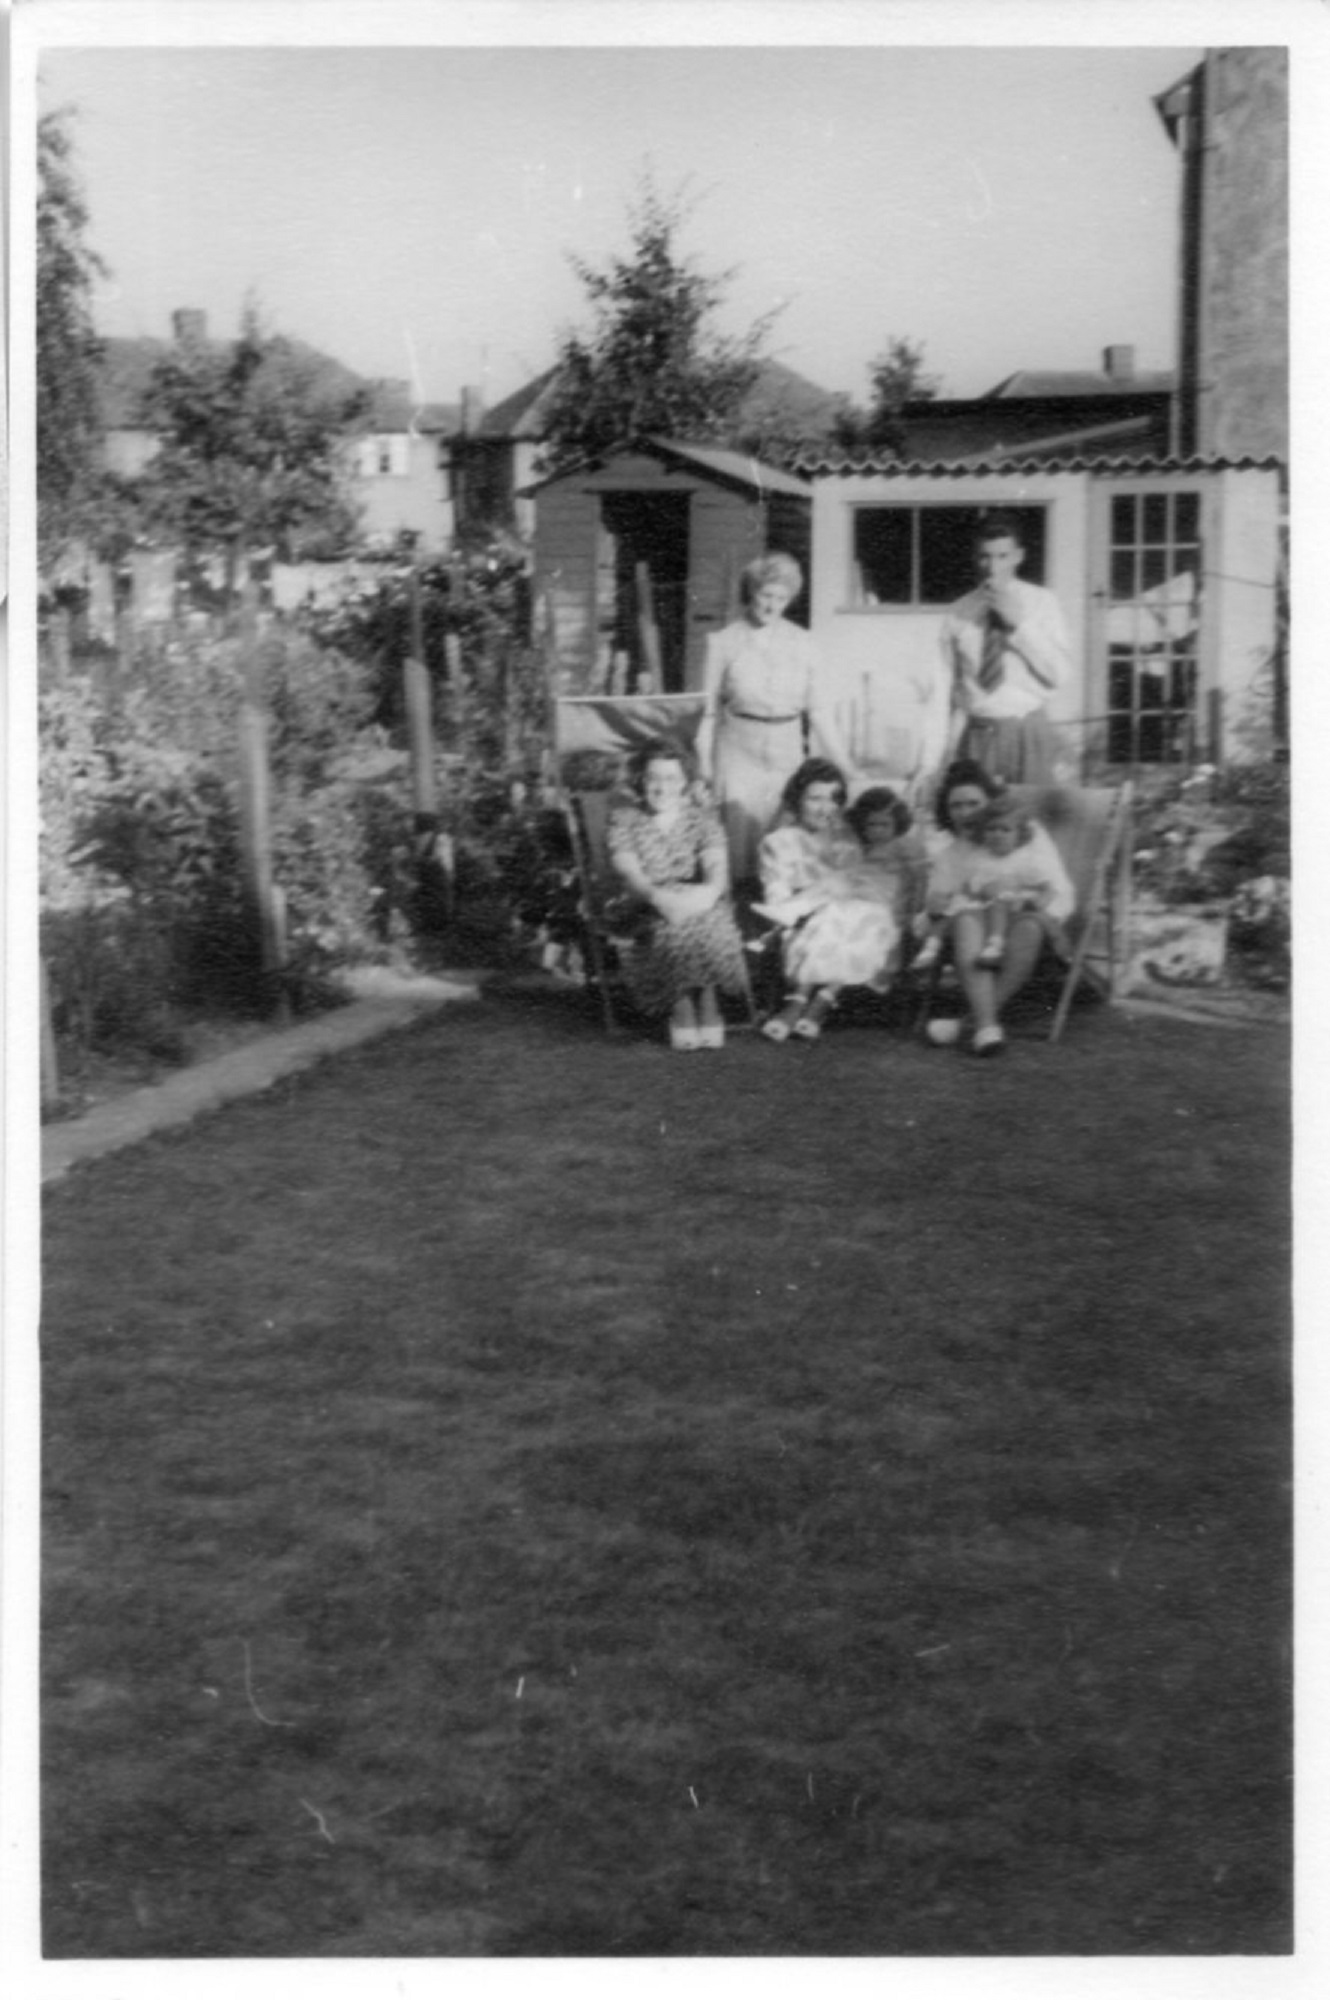 Flanders Family. 7 Hind Grove, Poplar, E.14. Late 1940s.